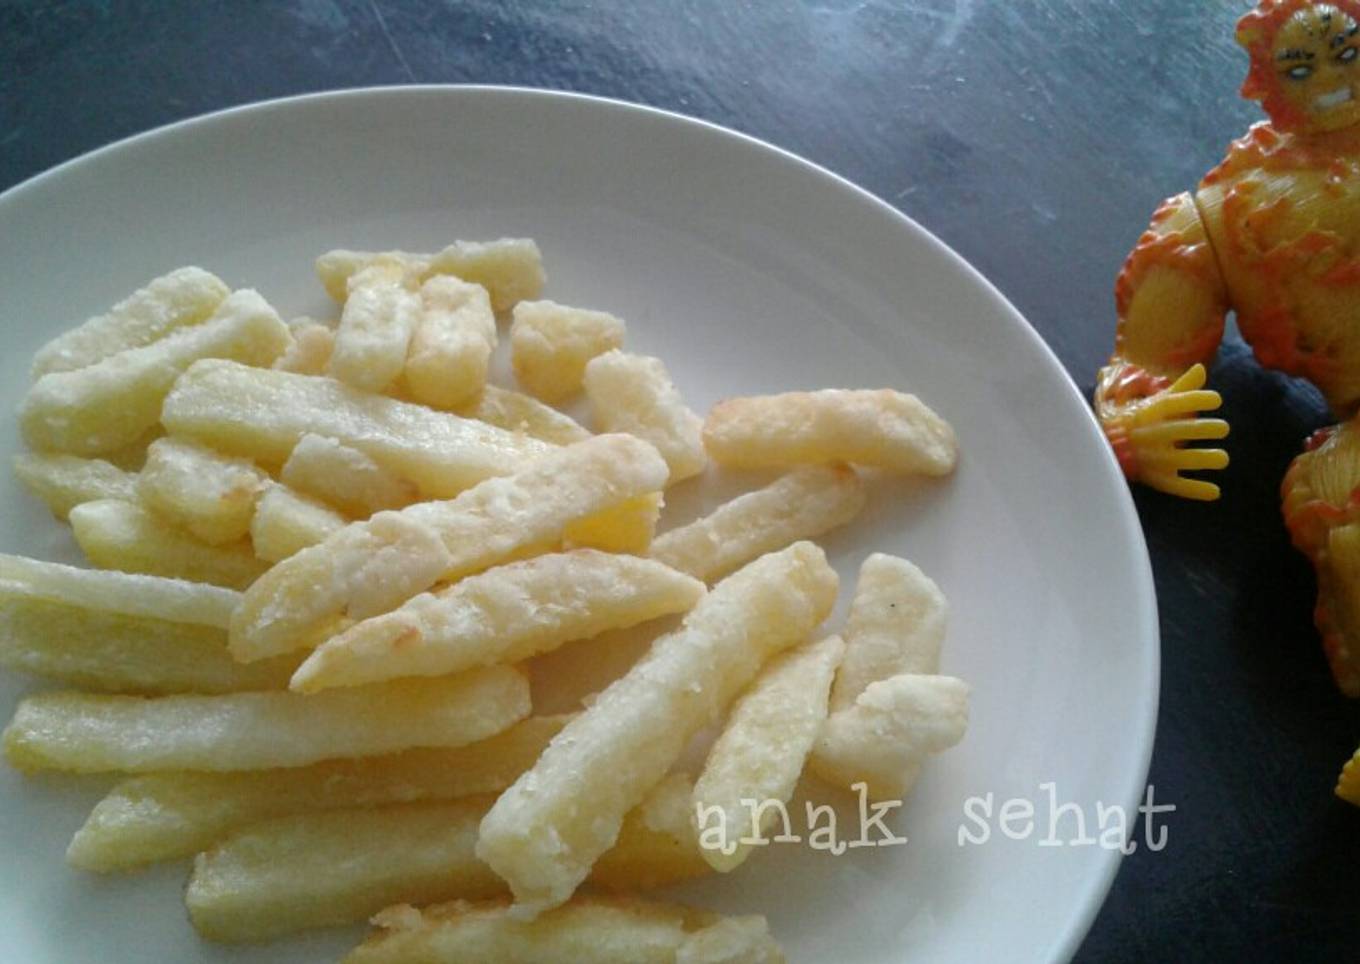 French fries/ kentang goreng sehat| frozen food | bekal (no msg)